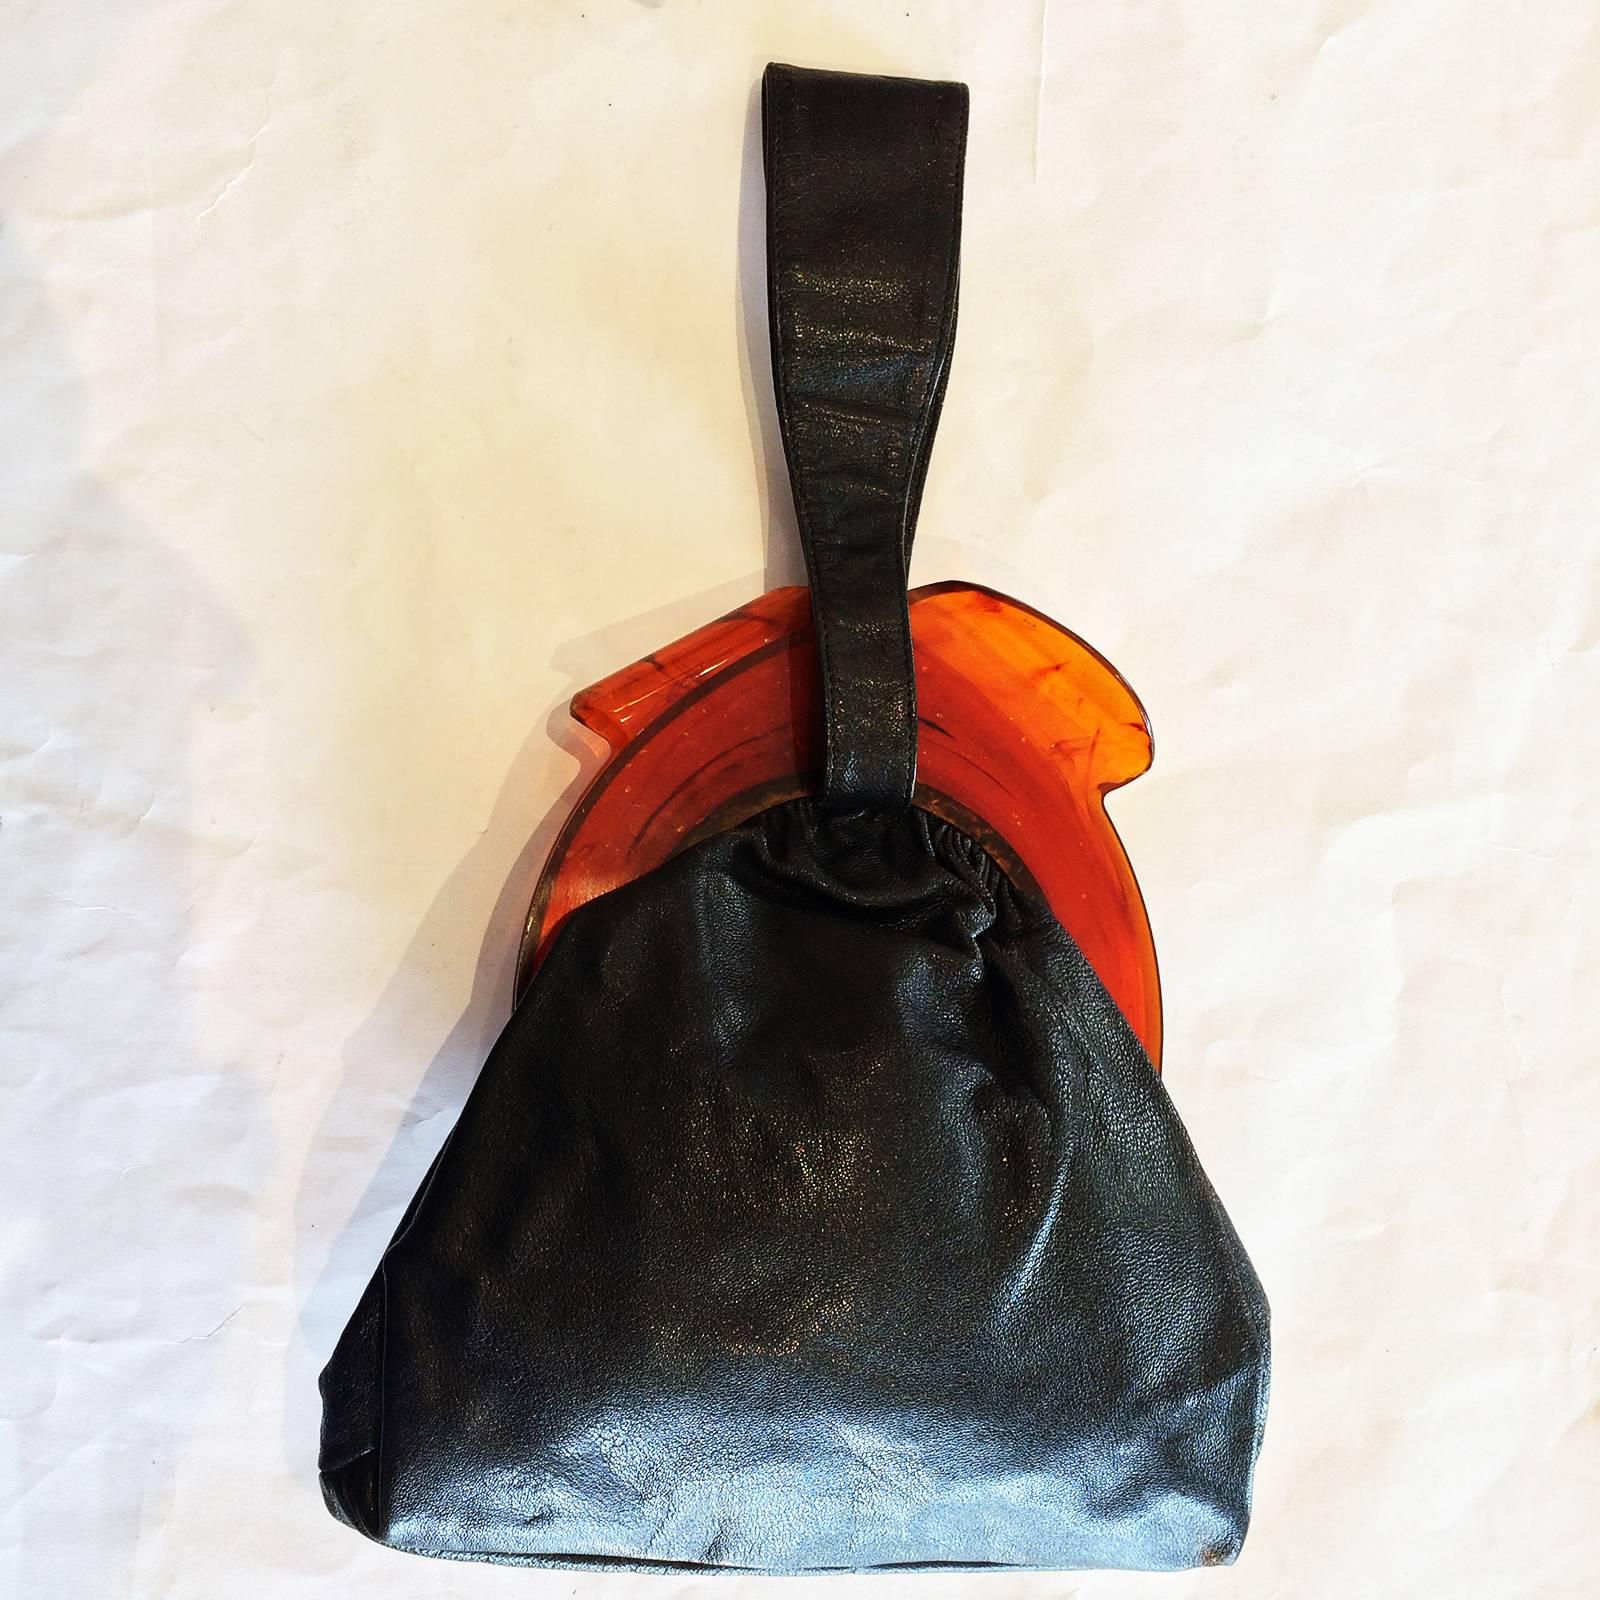 Women's Art Deco handbag purse with huge bakelite clasp